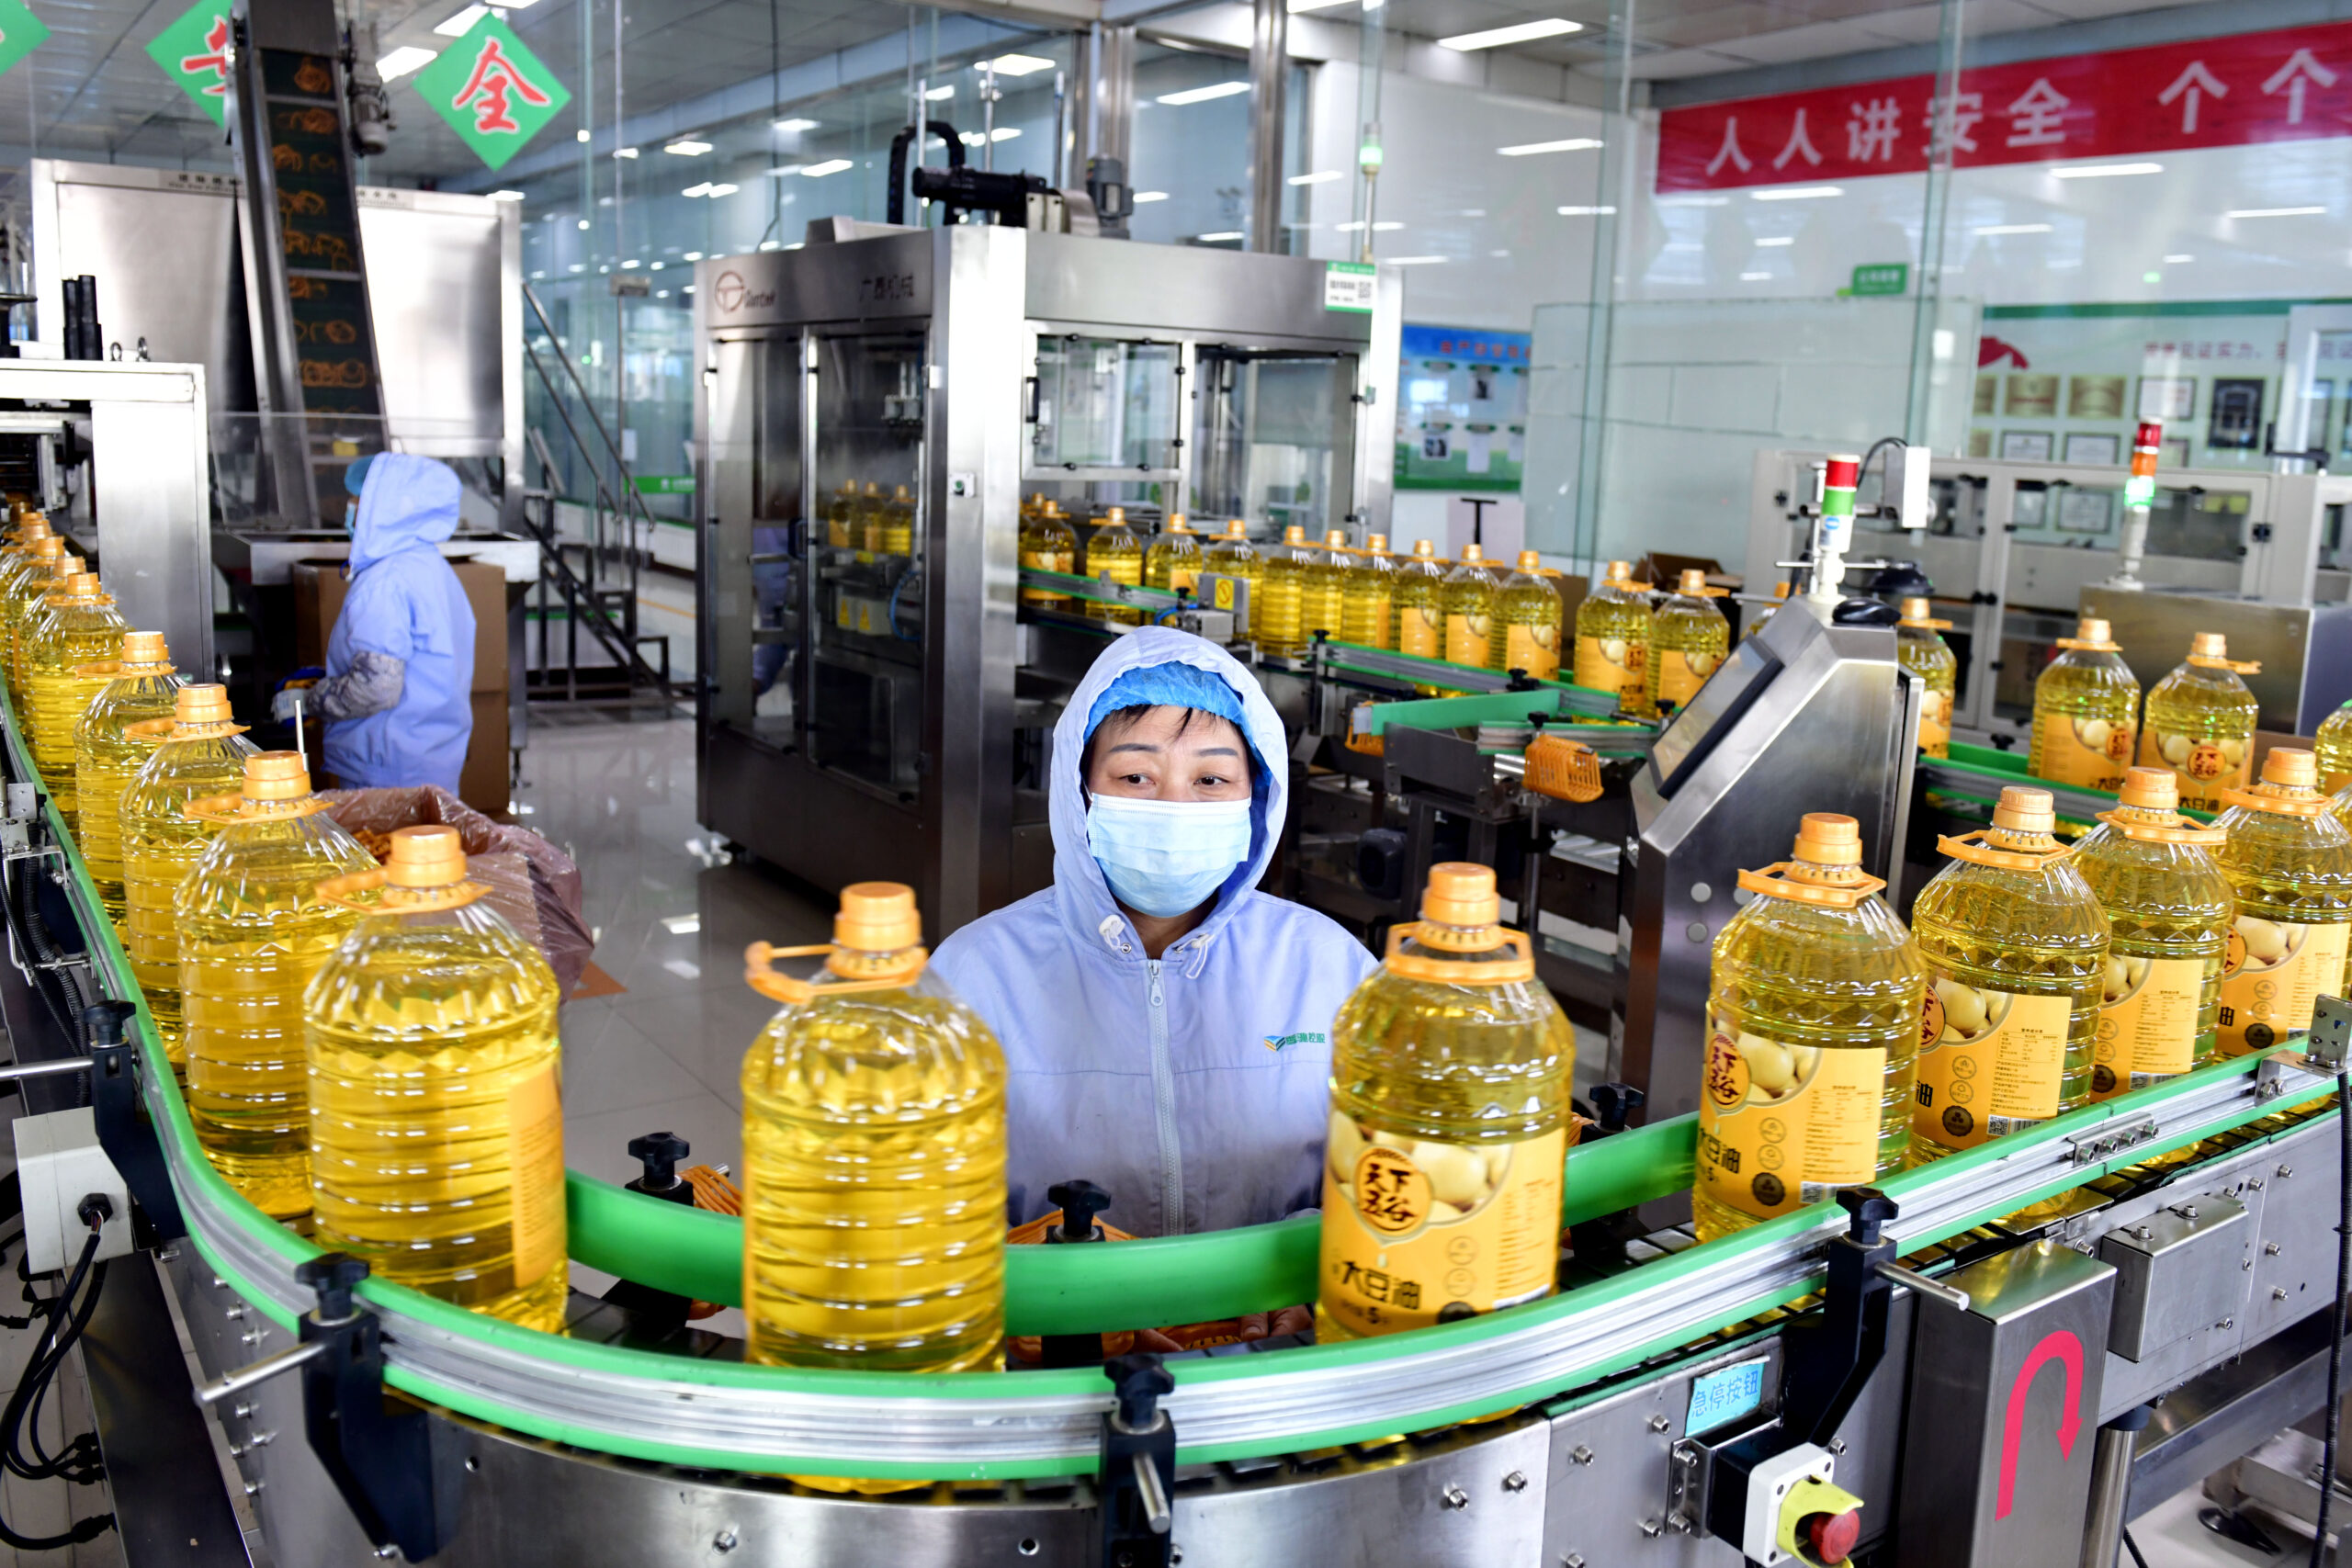 ผลกำไรอุตสาหกรรมในจีน เดือนต.ค. เพิ่มขึ้น 2.7%